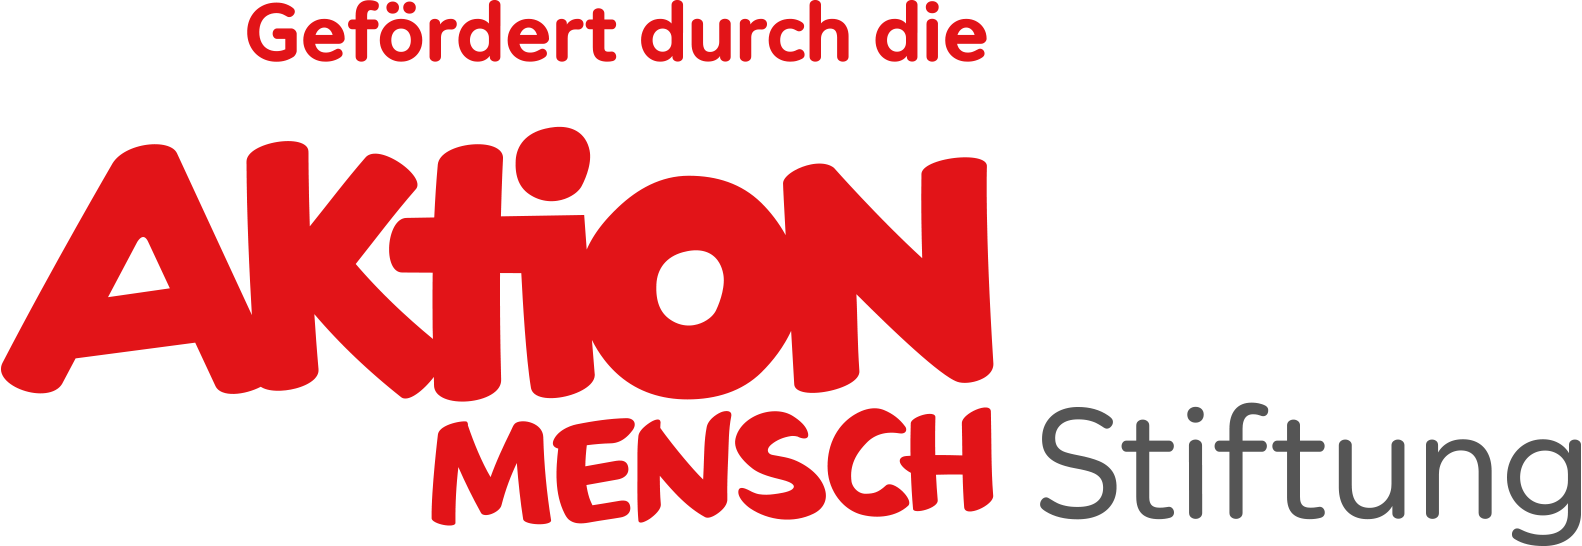 Logo: Gefördert durch die Aktion Mensch Stiftung